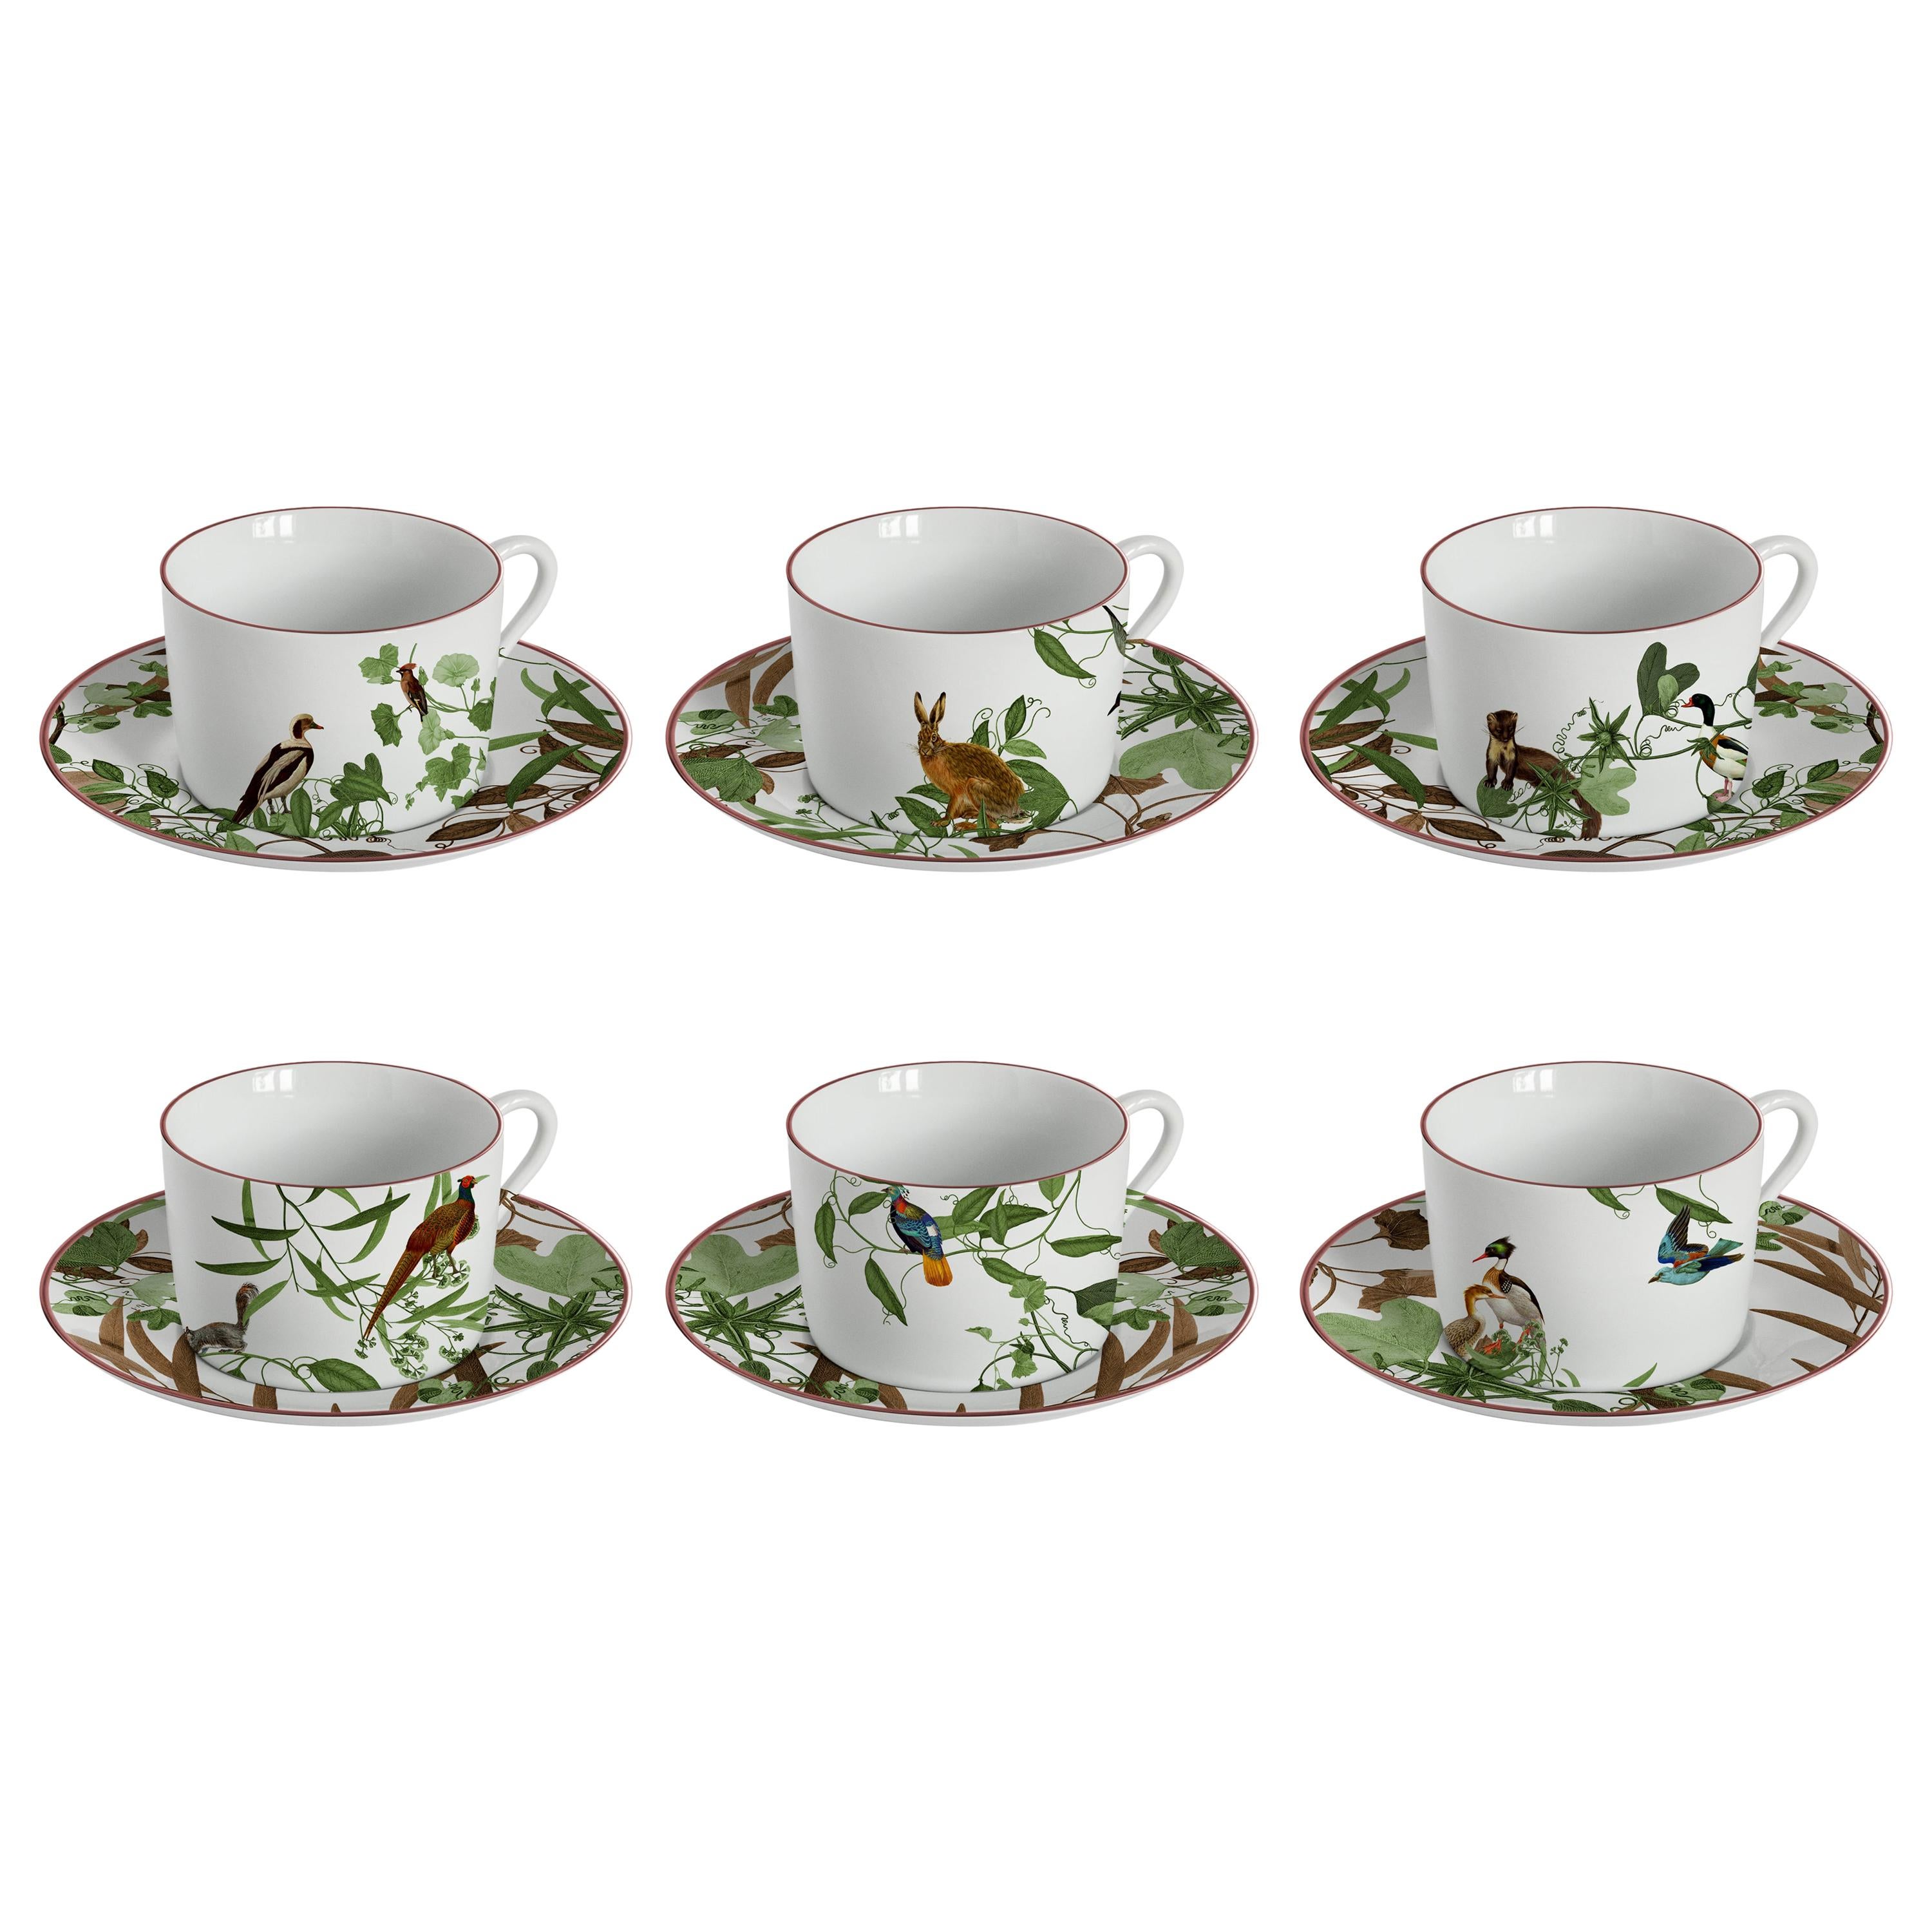 Mont Blanc, Tea Set with Six Contemporary Porcelains with Decorative Design